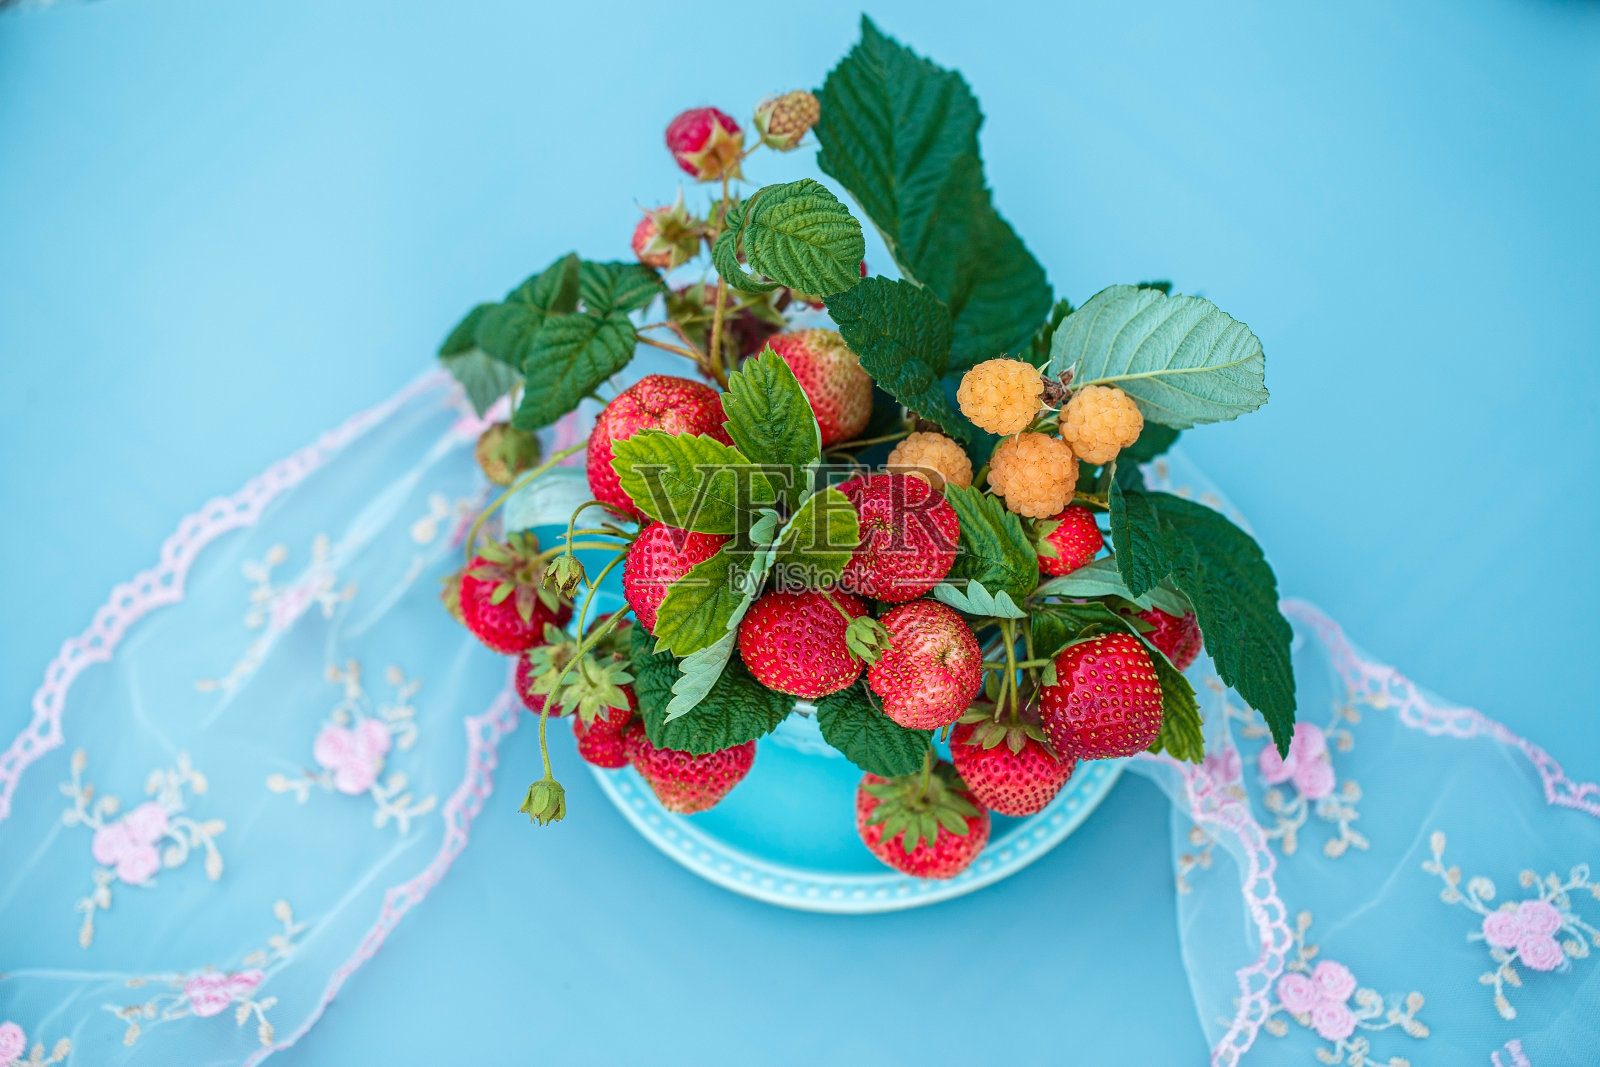 一个盛着一束浆果的杯碟。在浅蓝色背景下的草莓叶子照片摄影图片